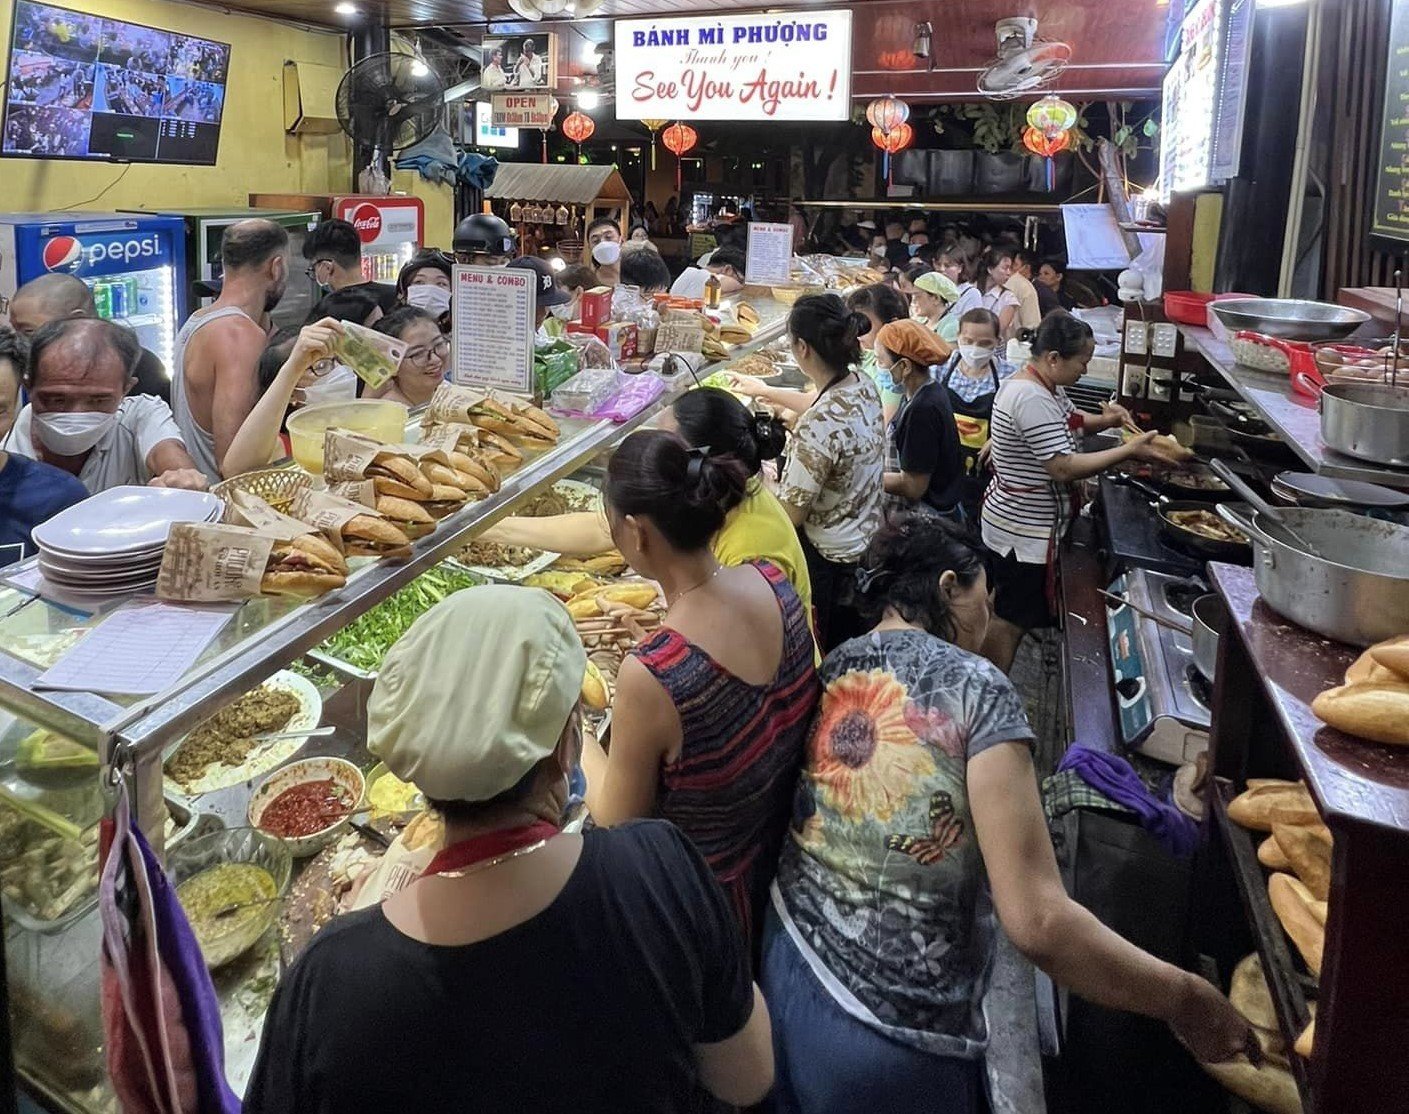 Sở Y tế Quảng Nam công bố kết quả xét nghiệm về ngộ độc tại tiệm bánh mì Phượng ở Hội An - Ảnh 1.